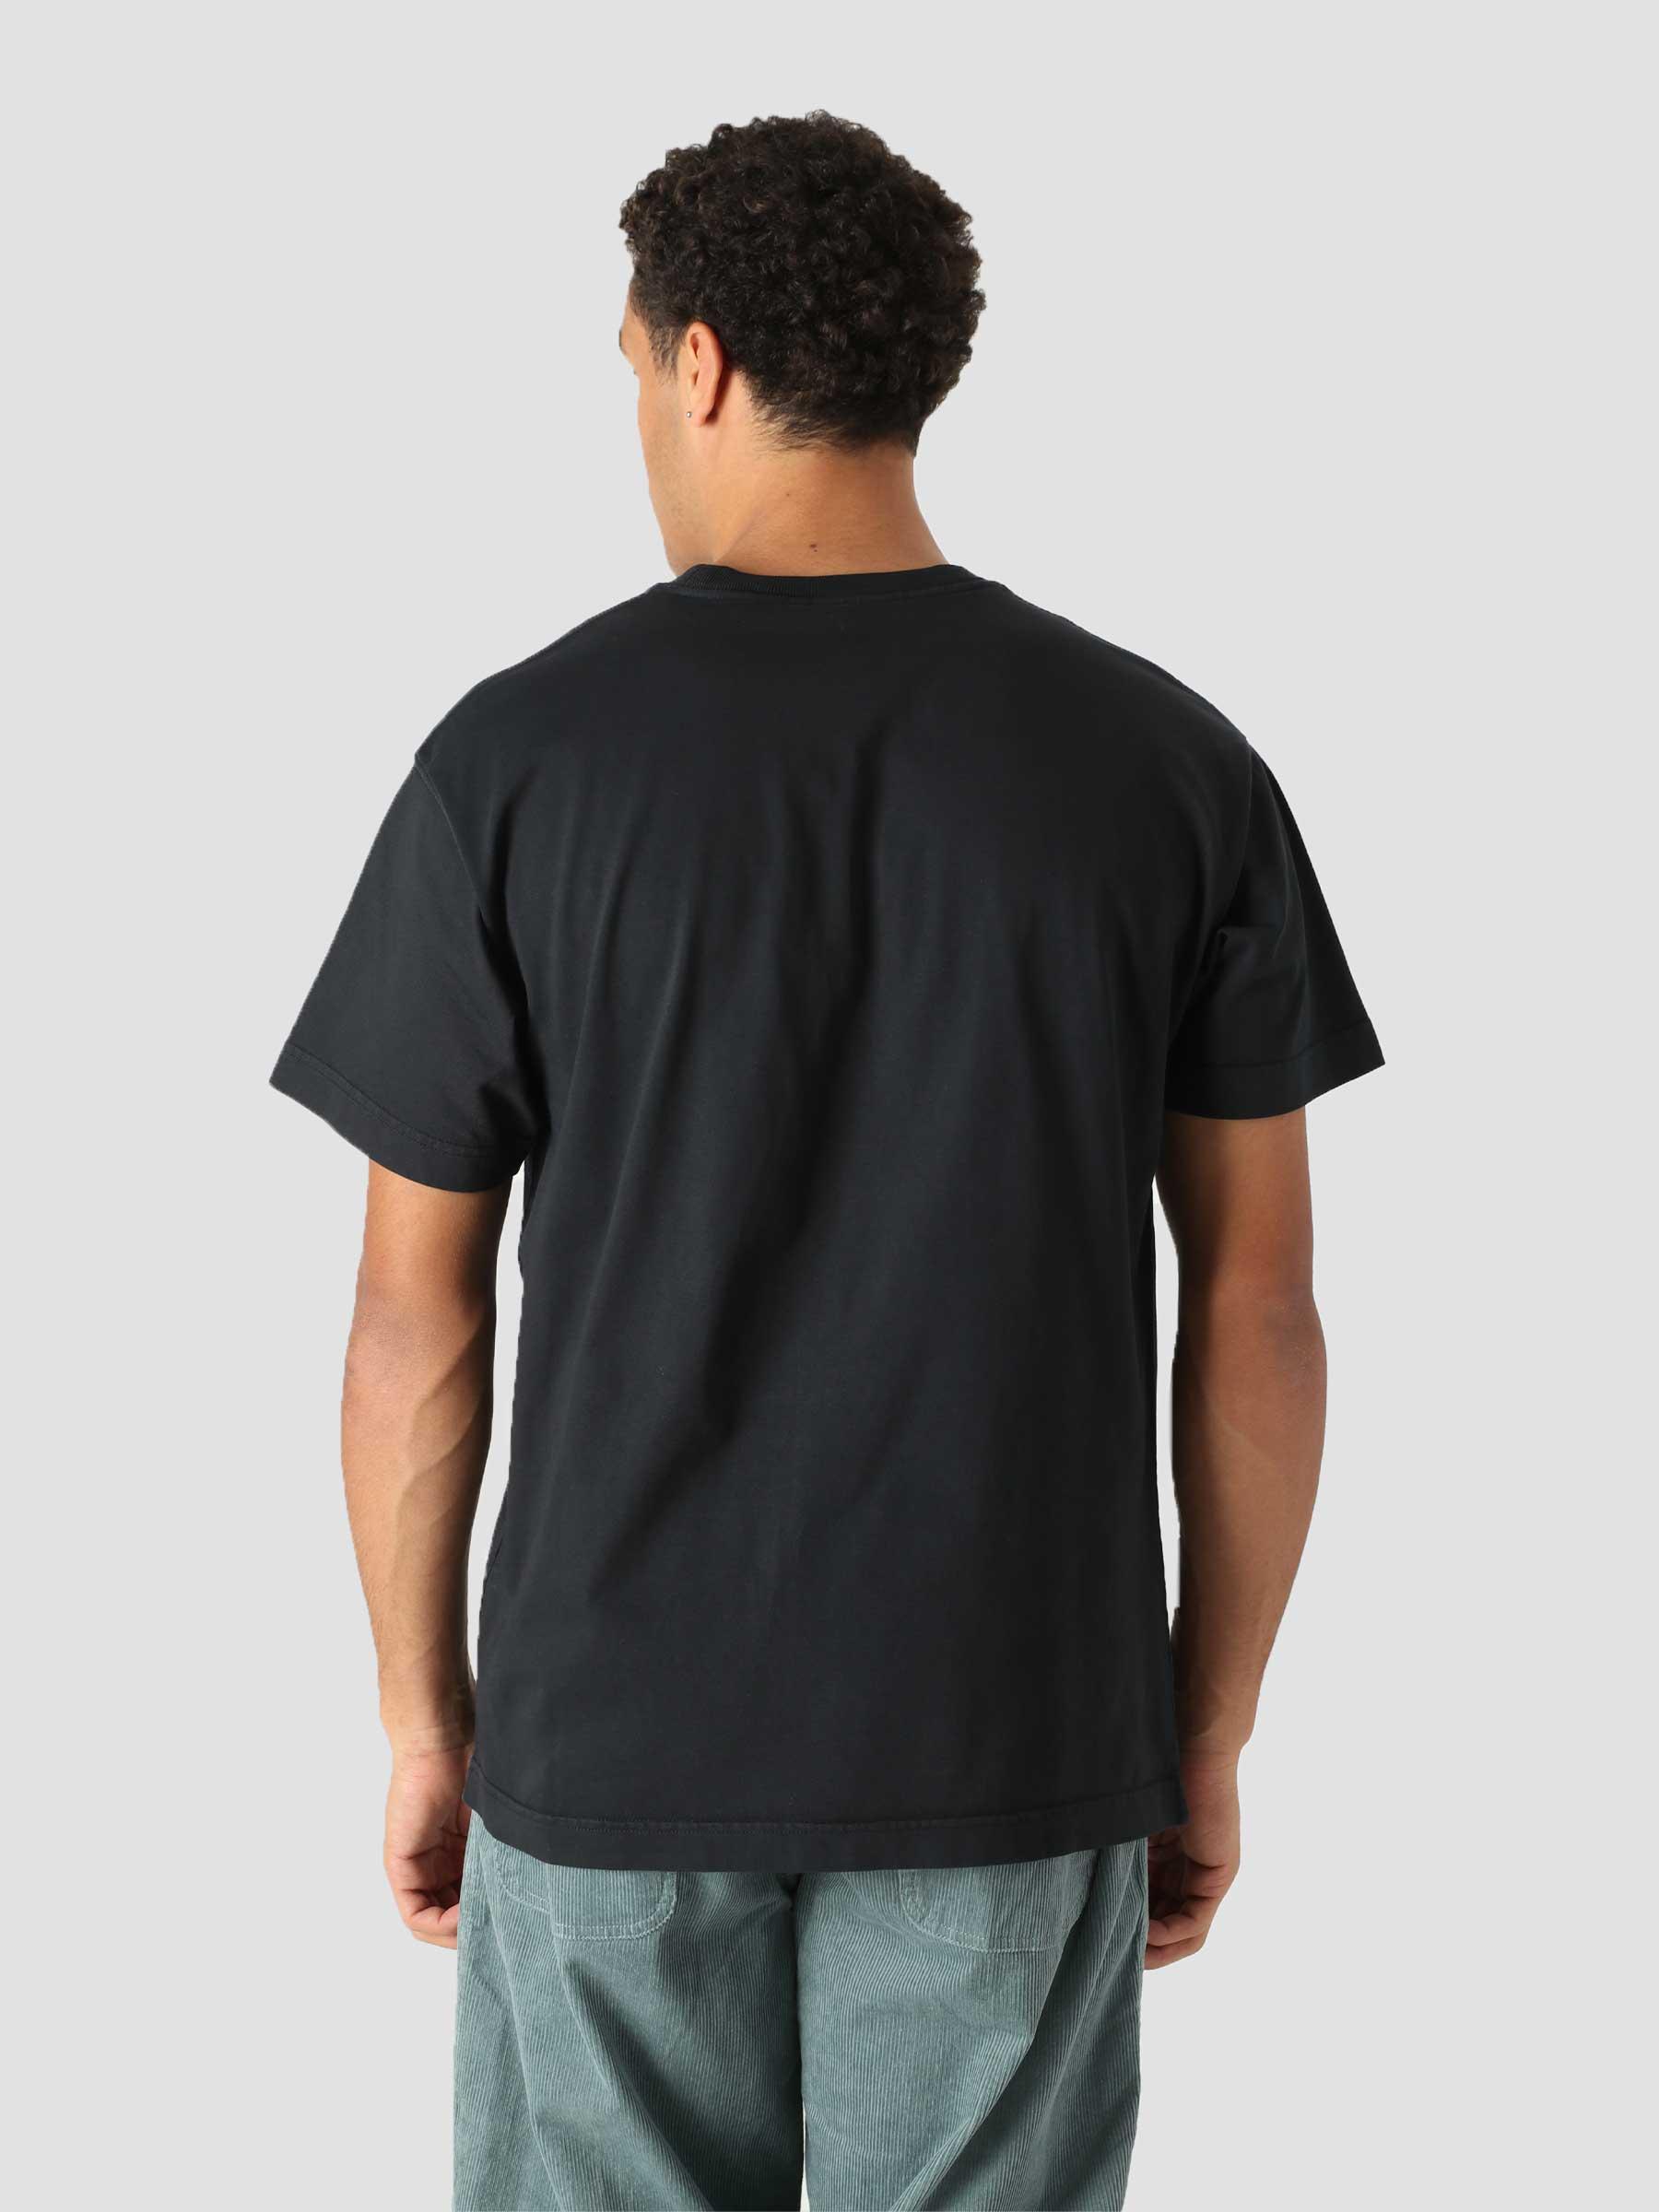 Vista T-Shirt Soot I029598